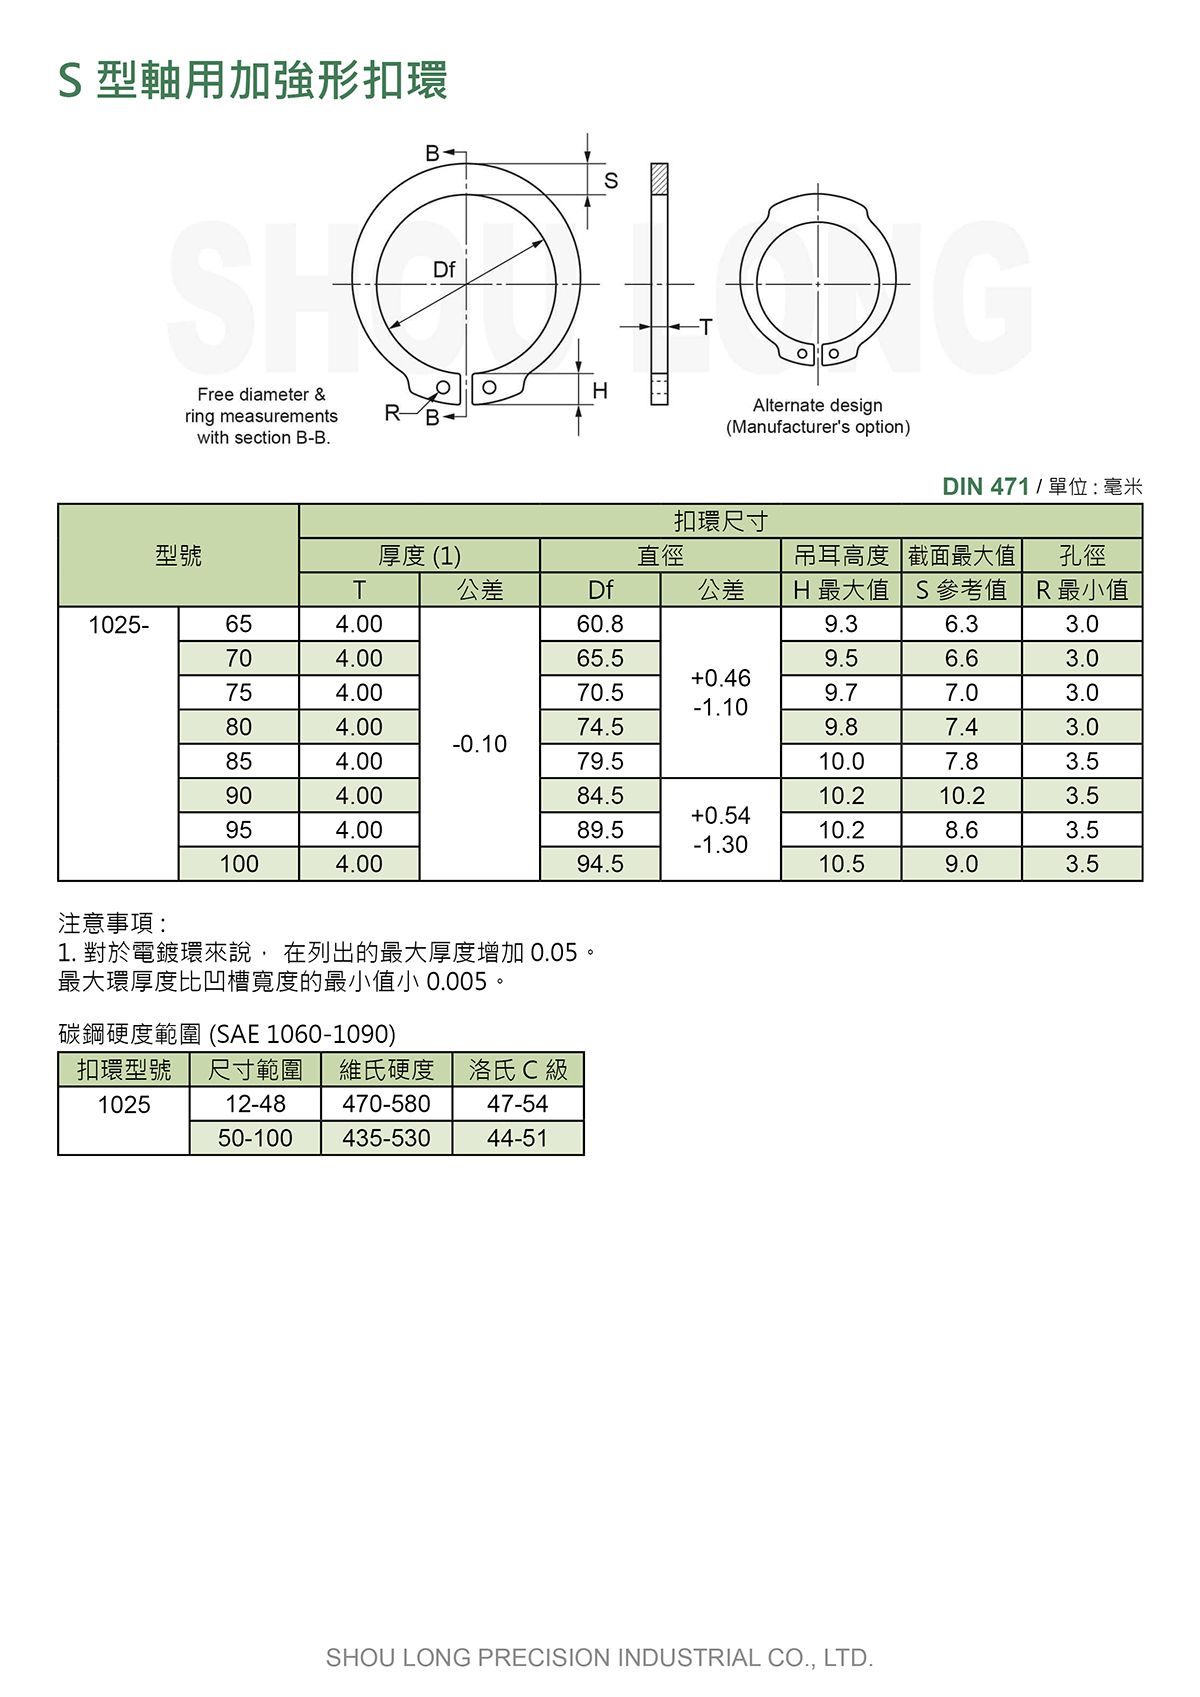 S型軸用加強形扣環DIN 471 (公制) 規格表 2